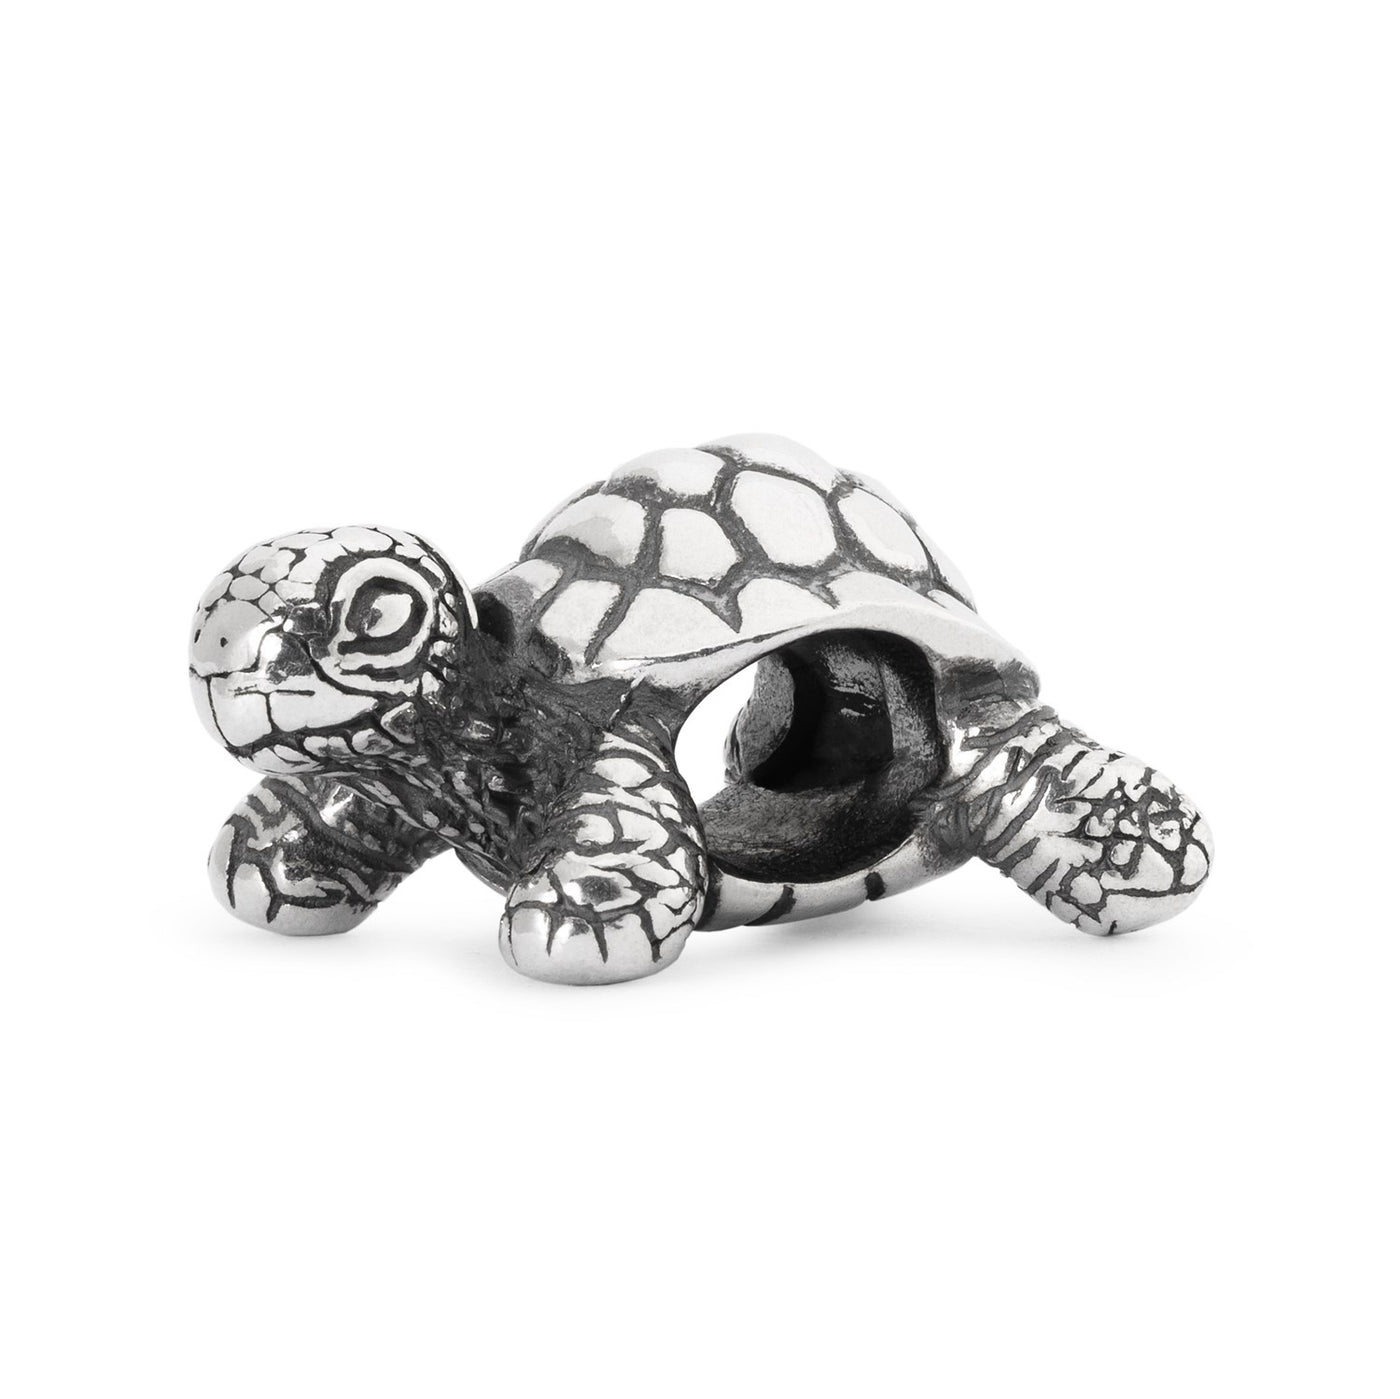 Perle de tortue africaine en argent pour bijoux.